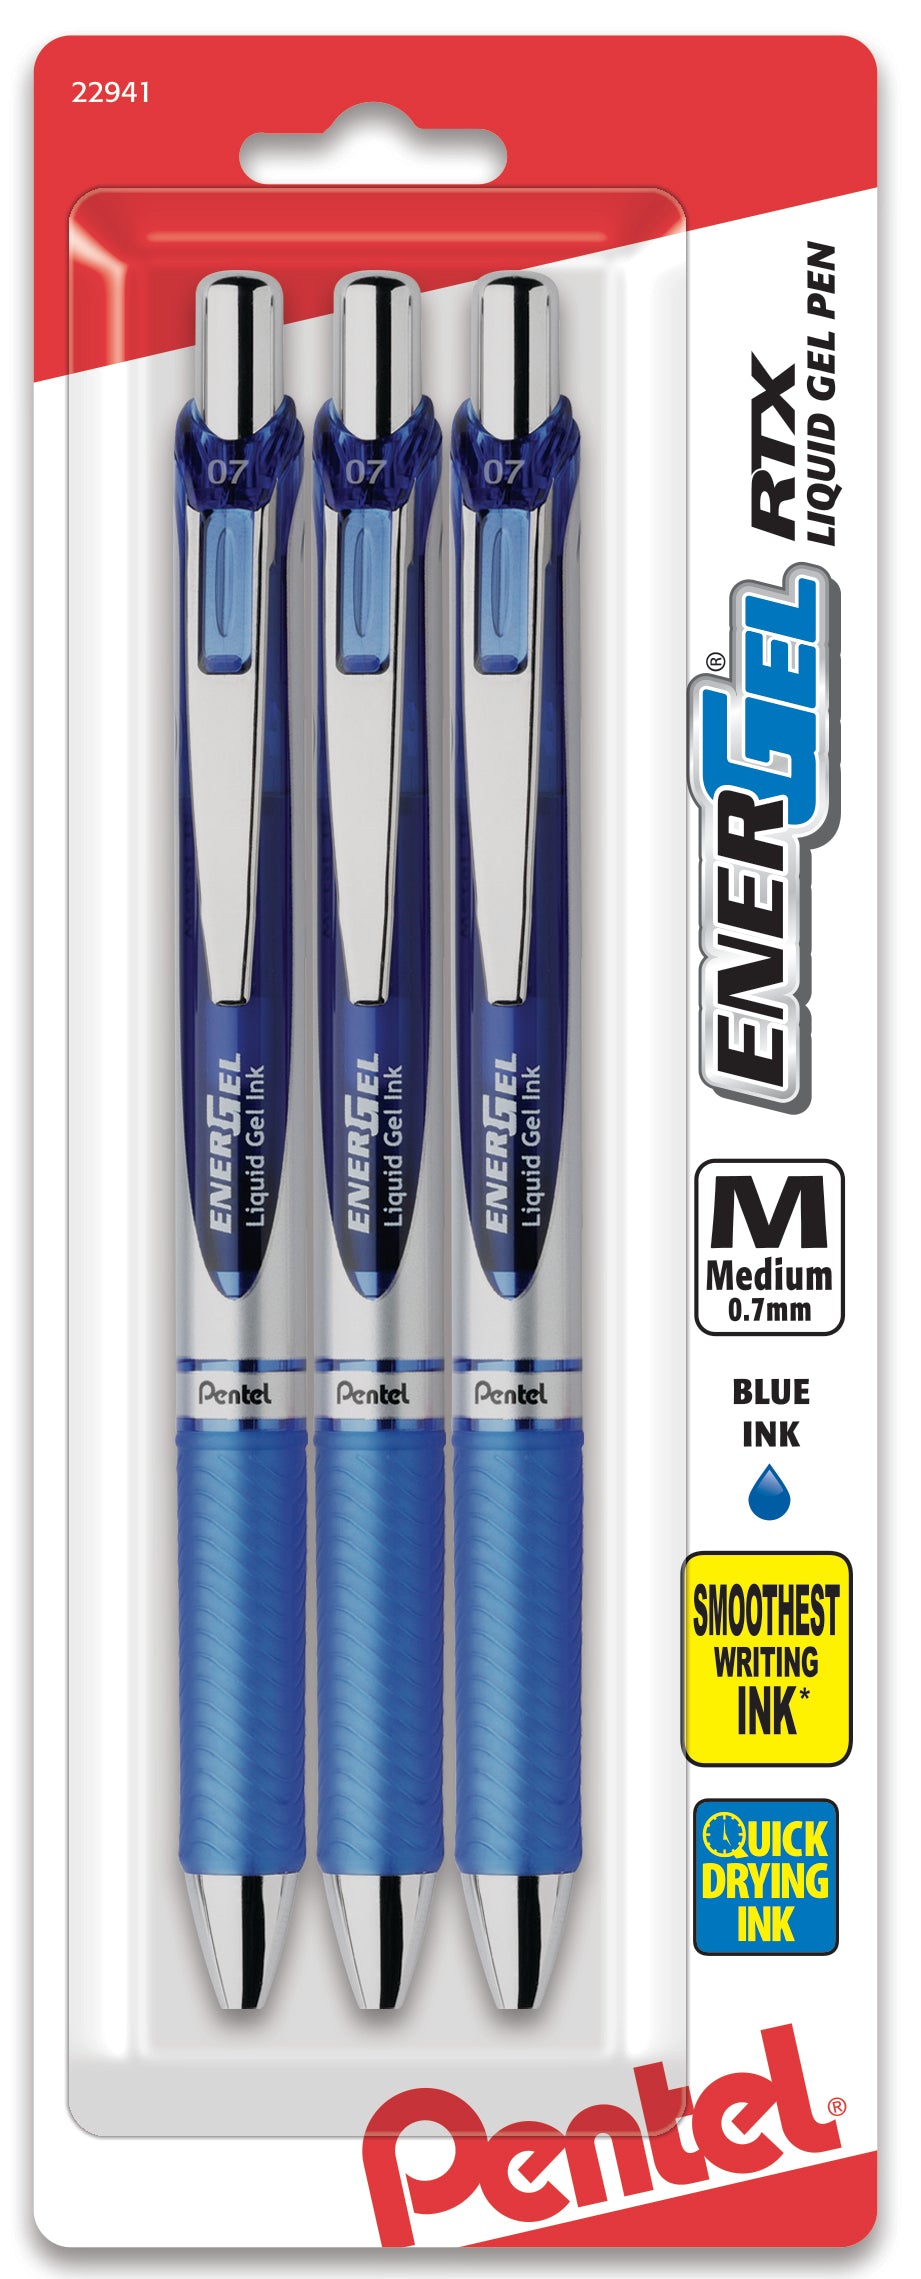 Pentel Energel RTX Liquid Gel Ink Pens 0.7 MM 10 Pack Black Ink